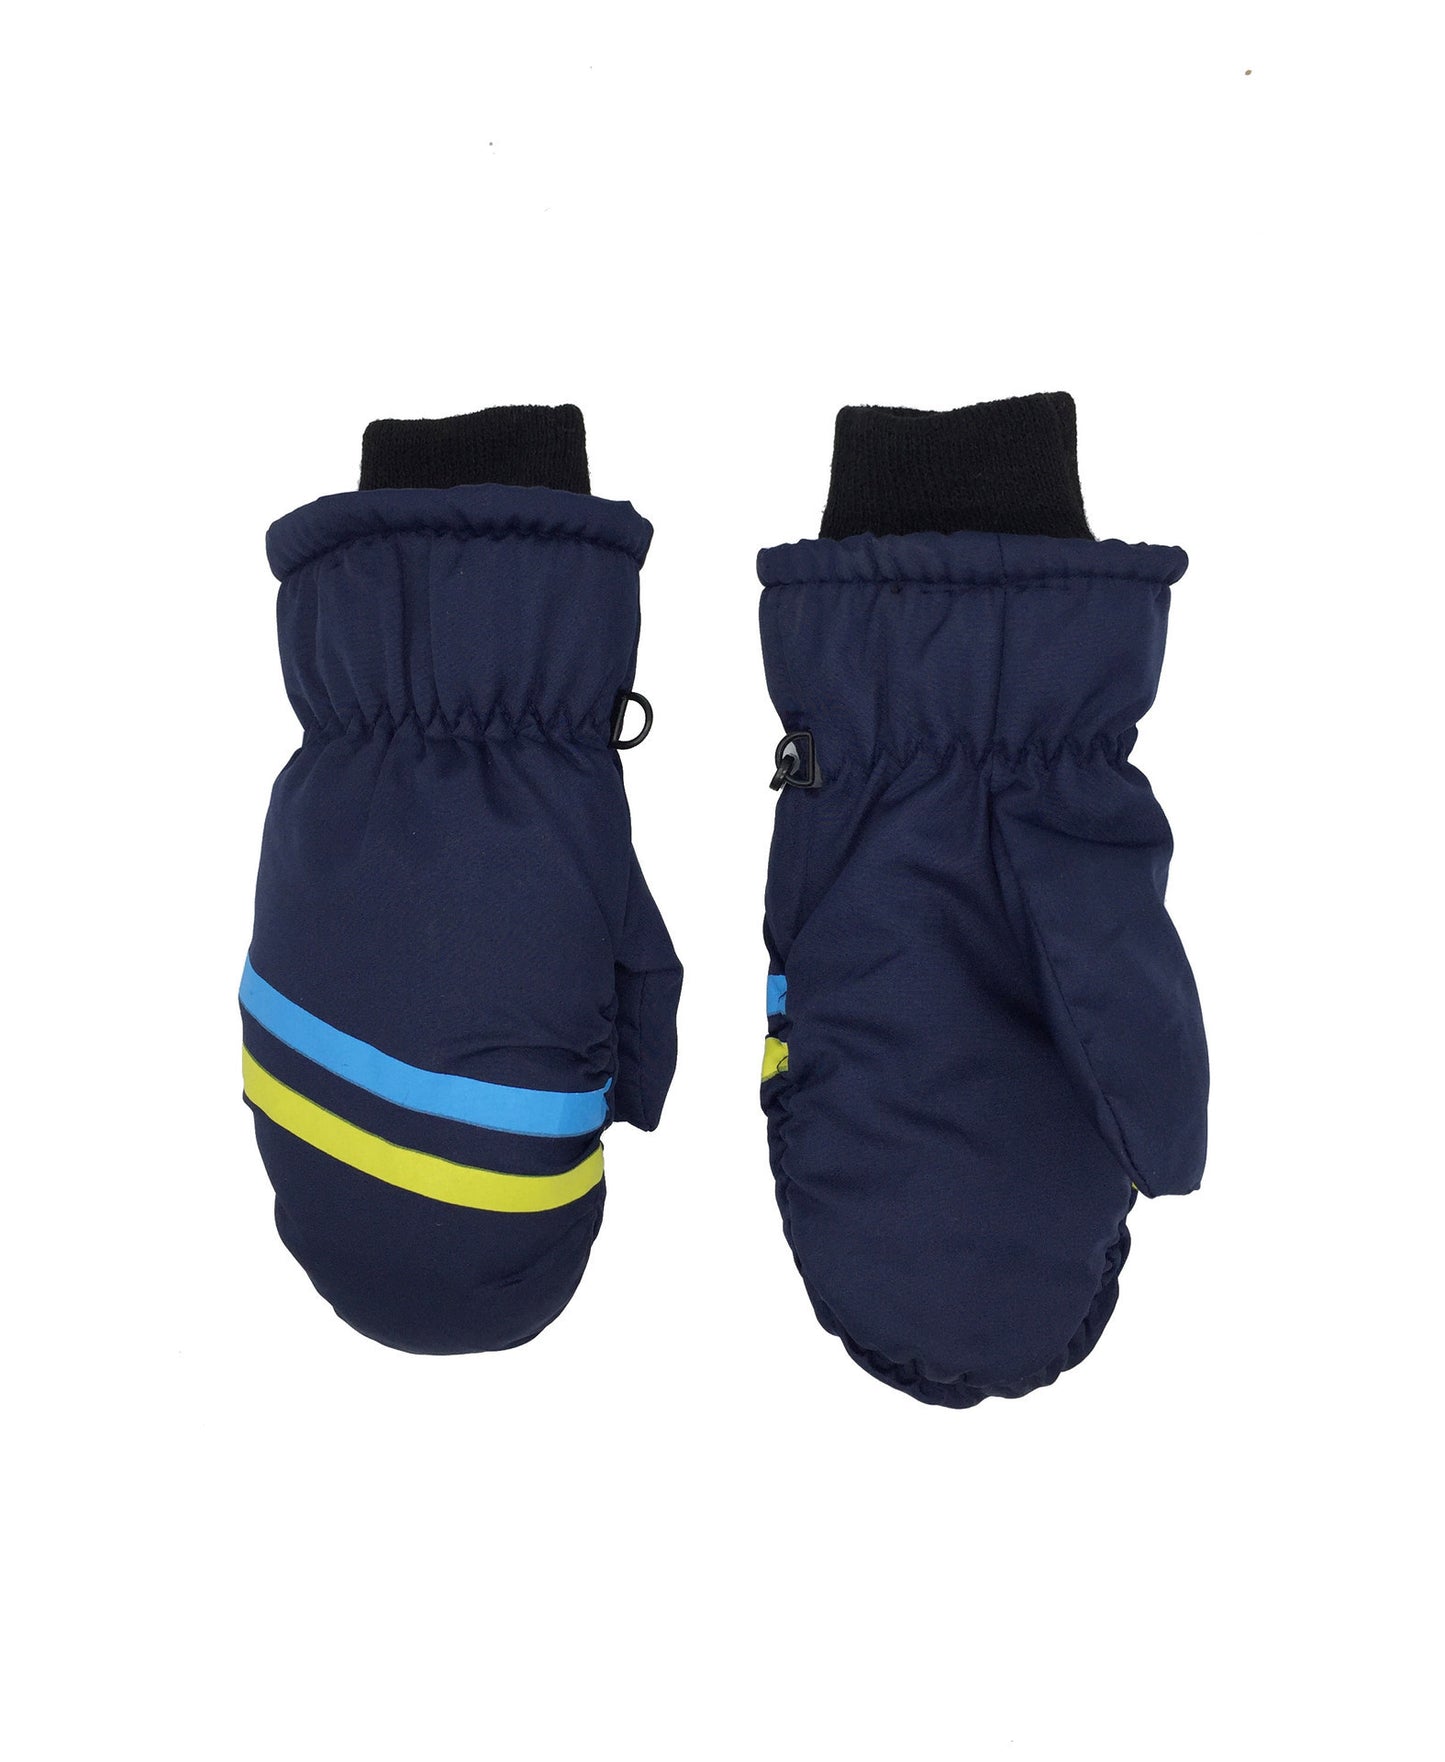 Children's Thick Geometric Print Warm Ski Gloves